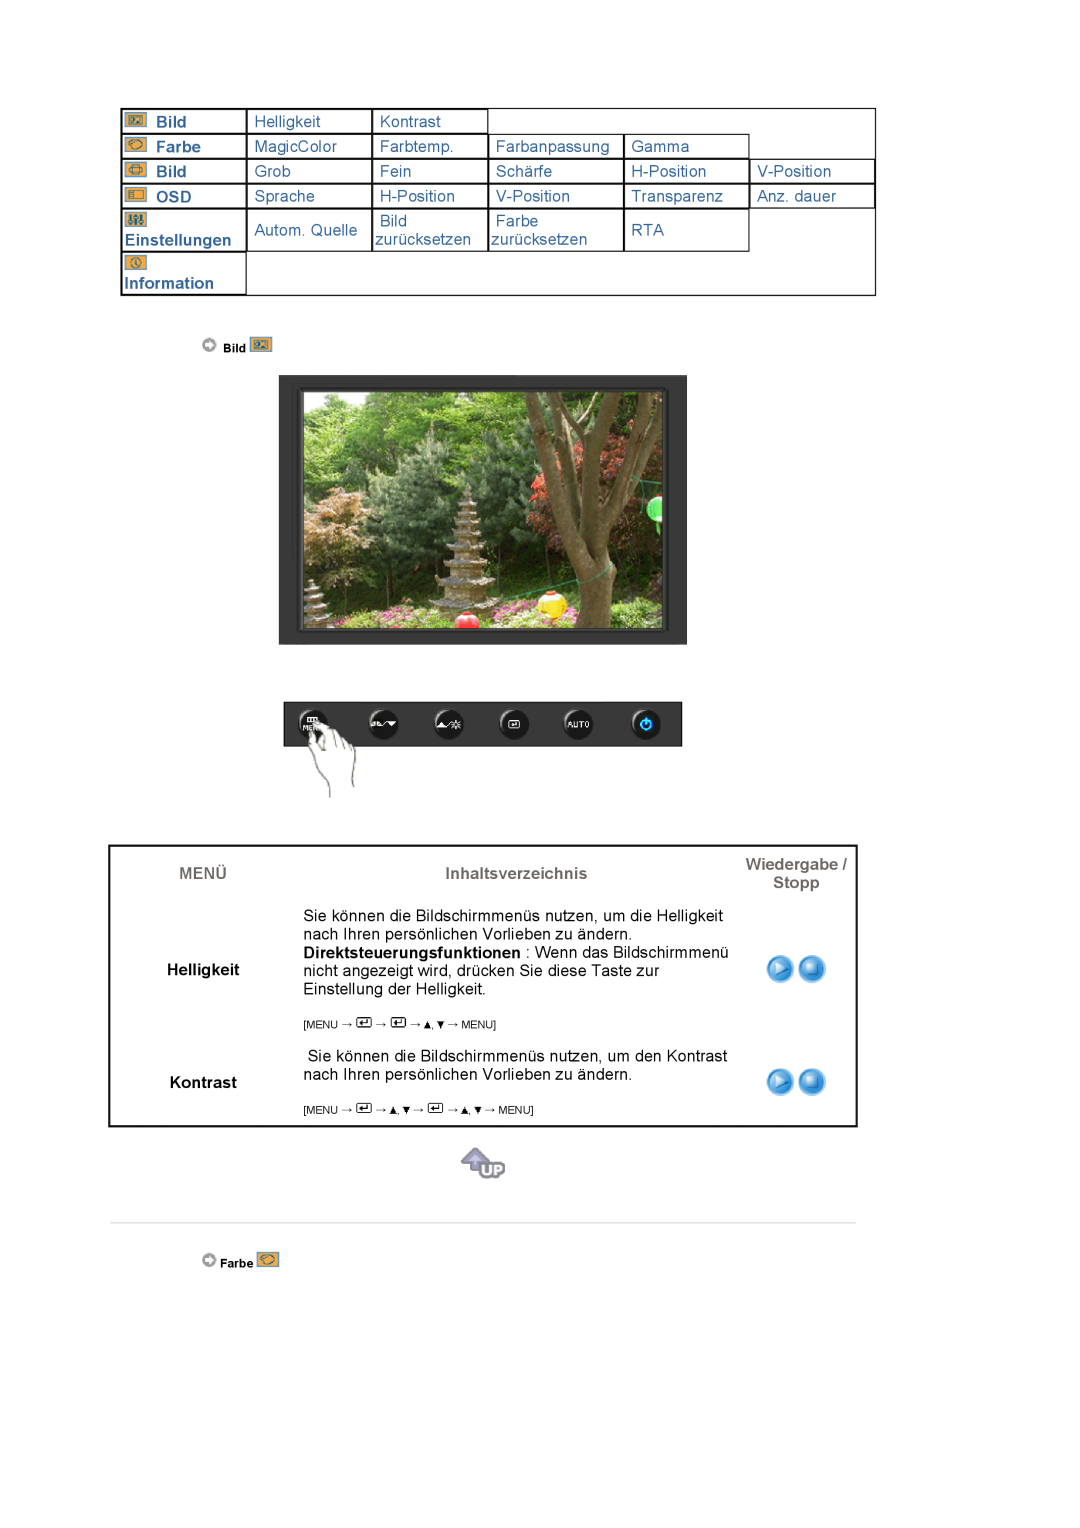 Samsung LS19HAWCSH/EDC, LS19HAWCSQ/EDC manual Helligkeit Kontrast, Bild, Farbe, Einstellungen, Information 